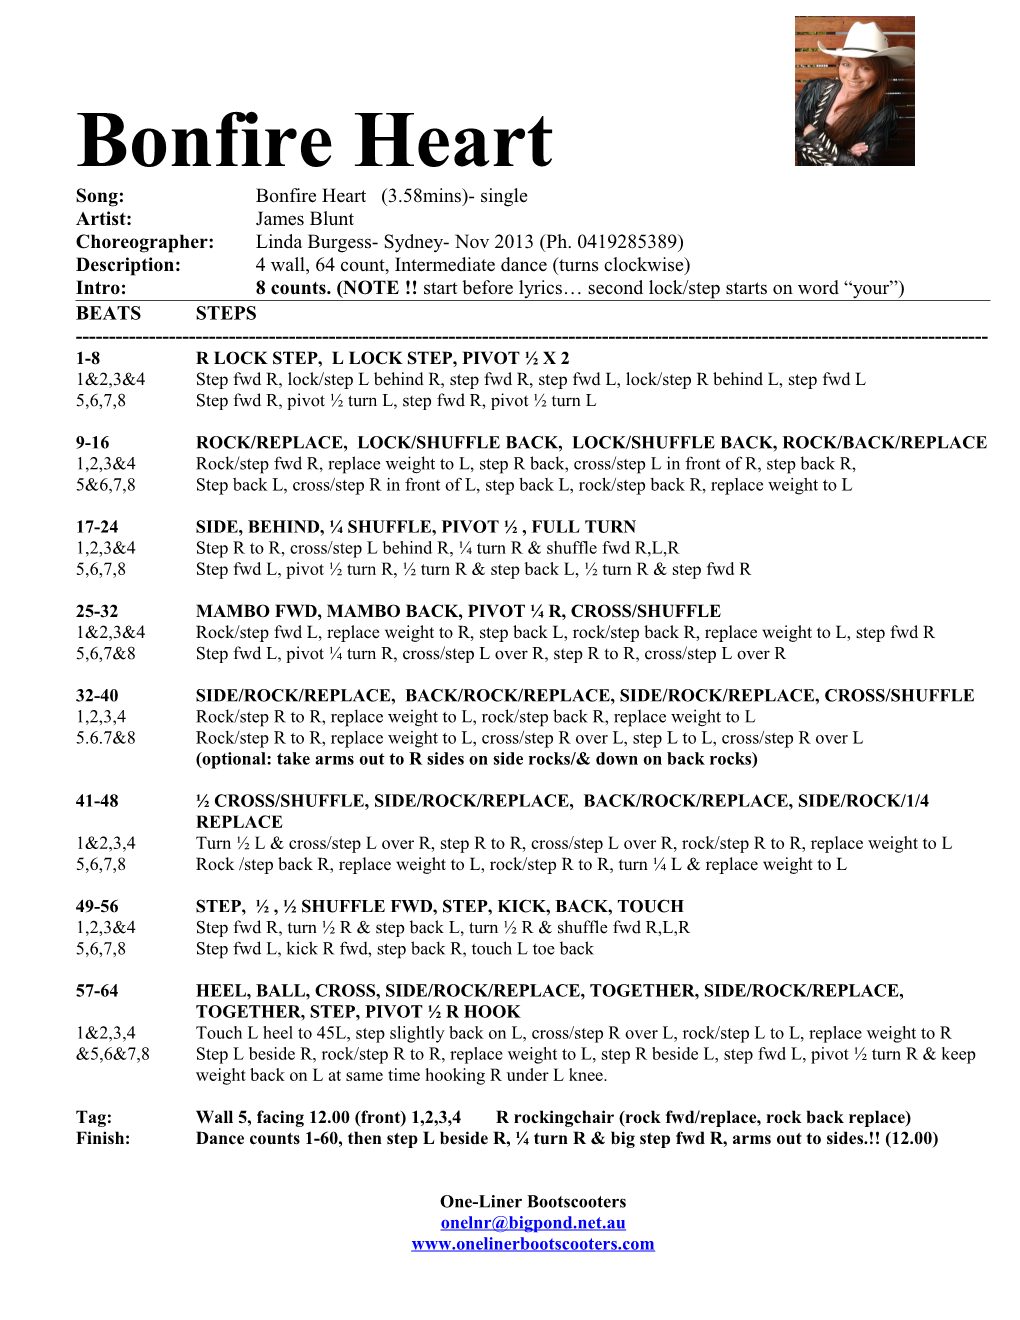 Song: Bonfire Heart (3.58Mins)- Single